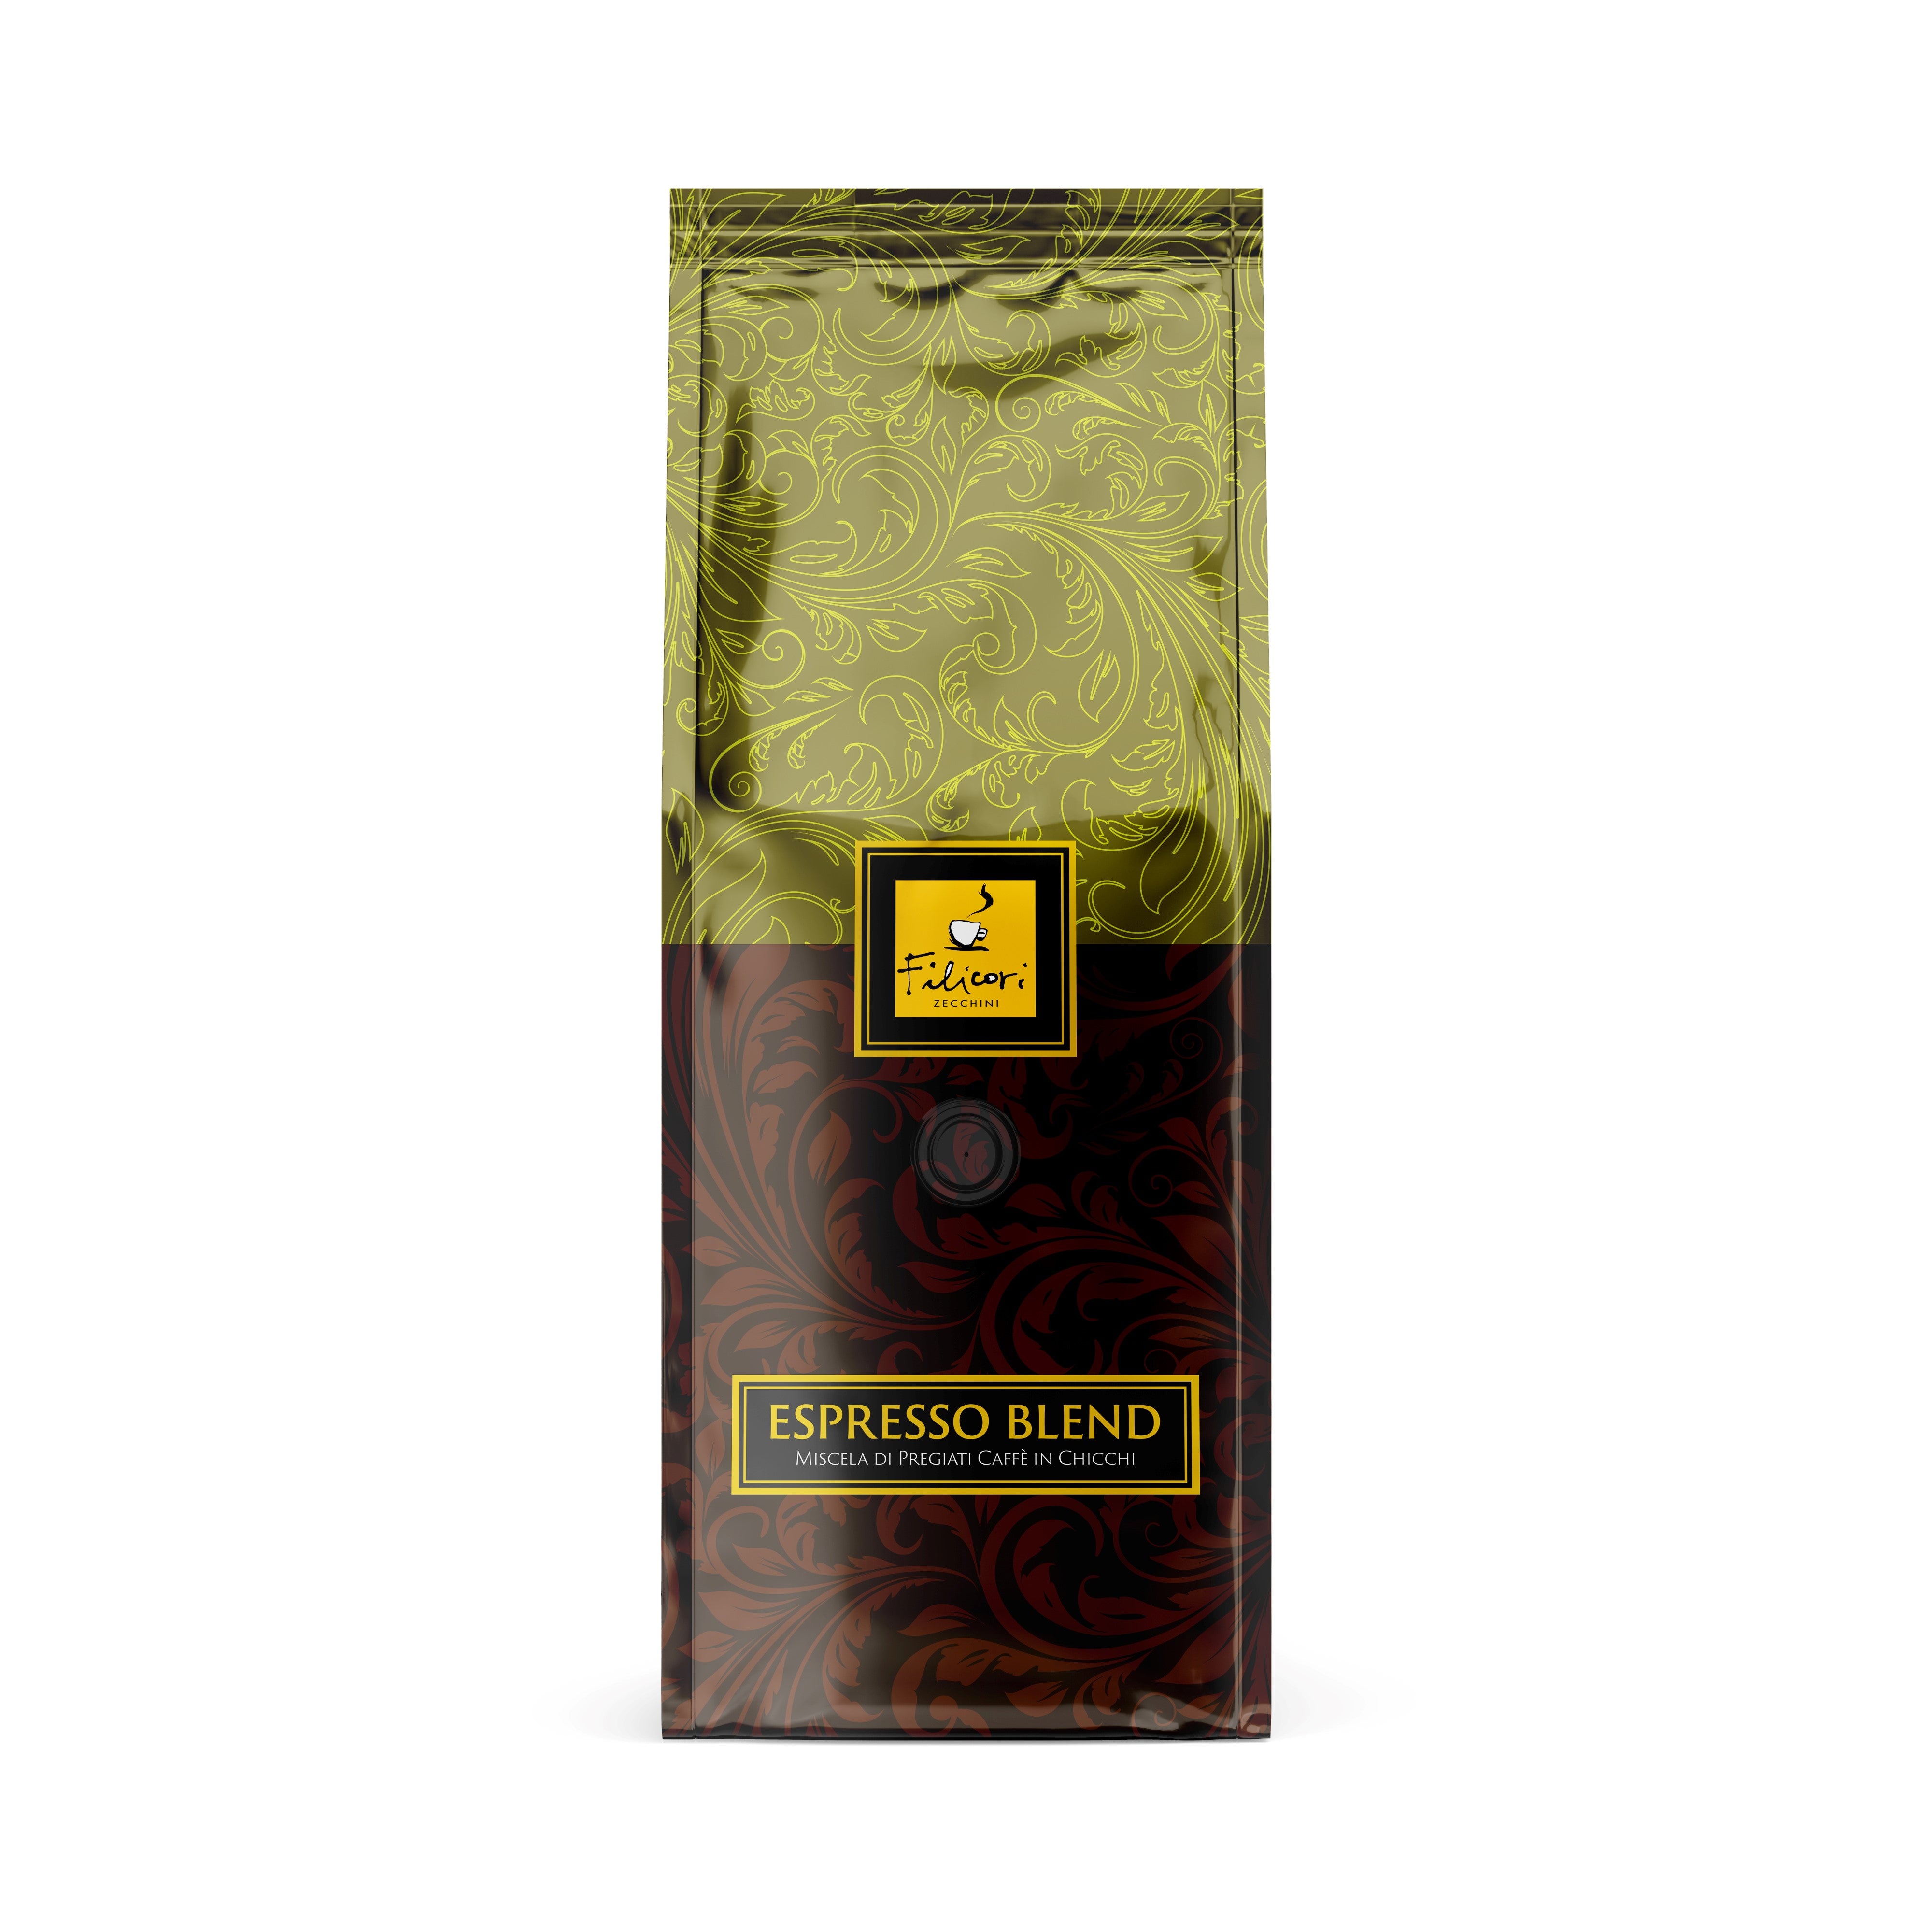 Filicori Zecchini Espresso Bean 6-2.2Lb. Bags,